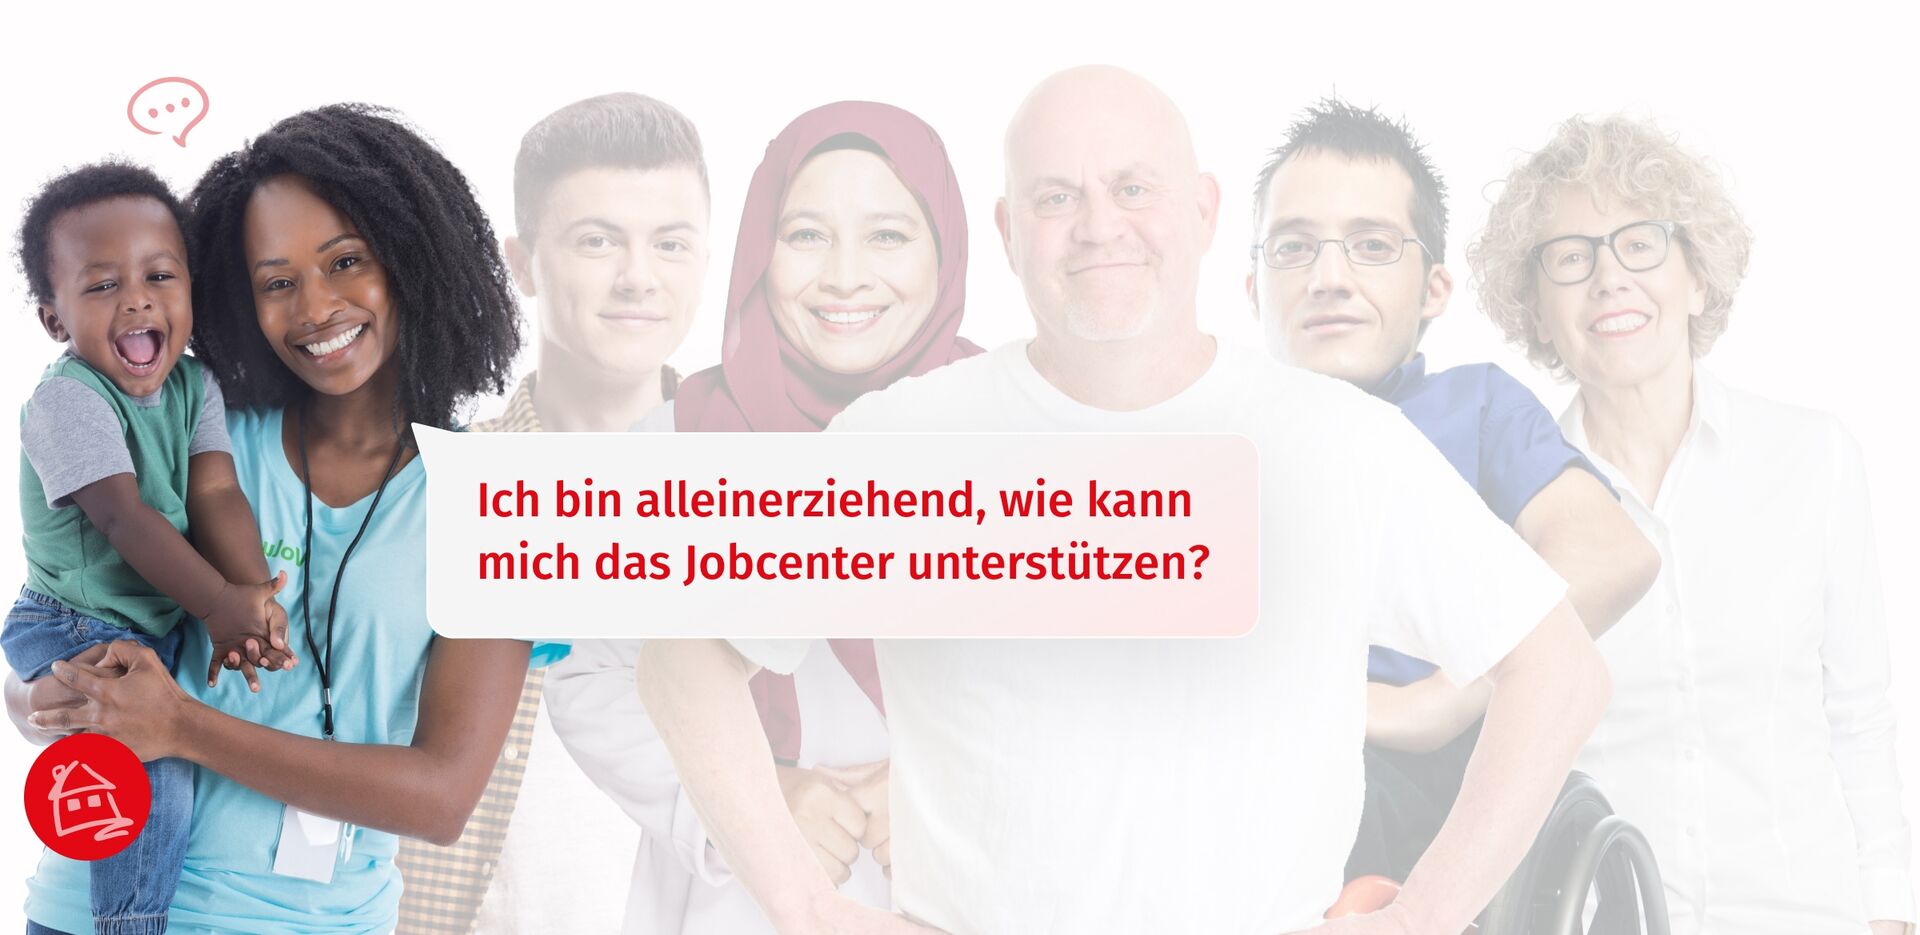 Eine diverse Zielgruppe von Menschen die vom Jobcenter Bremen unterstützt werden. Eine Frau mit Kind, die stellvertretend für die Zielgruppe der Alleinerziehenden steht, ist optisch hervorgehoben.